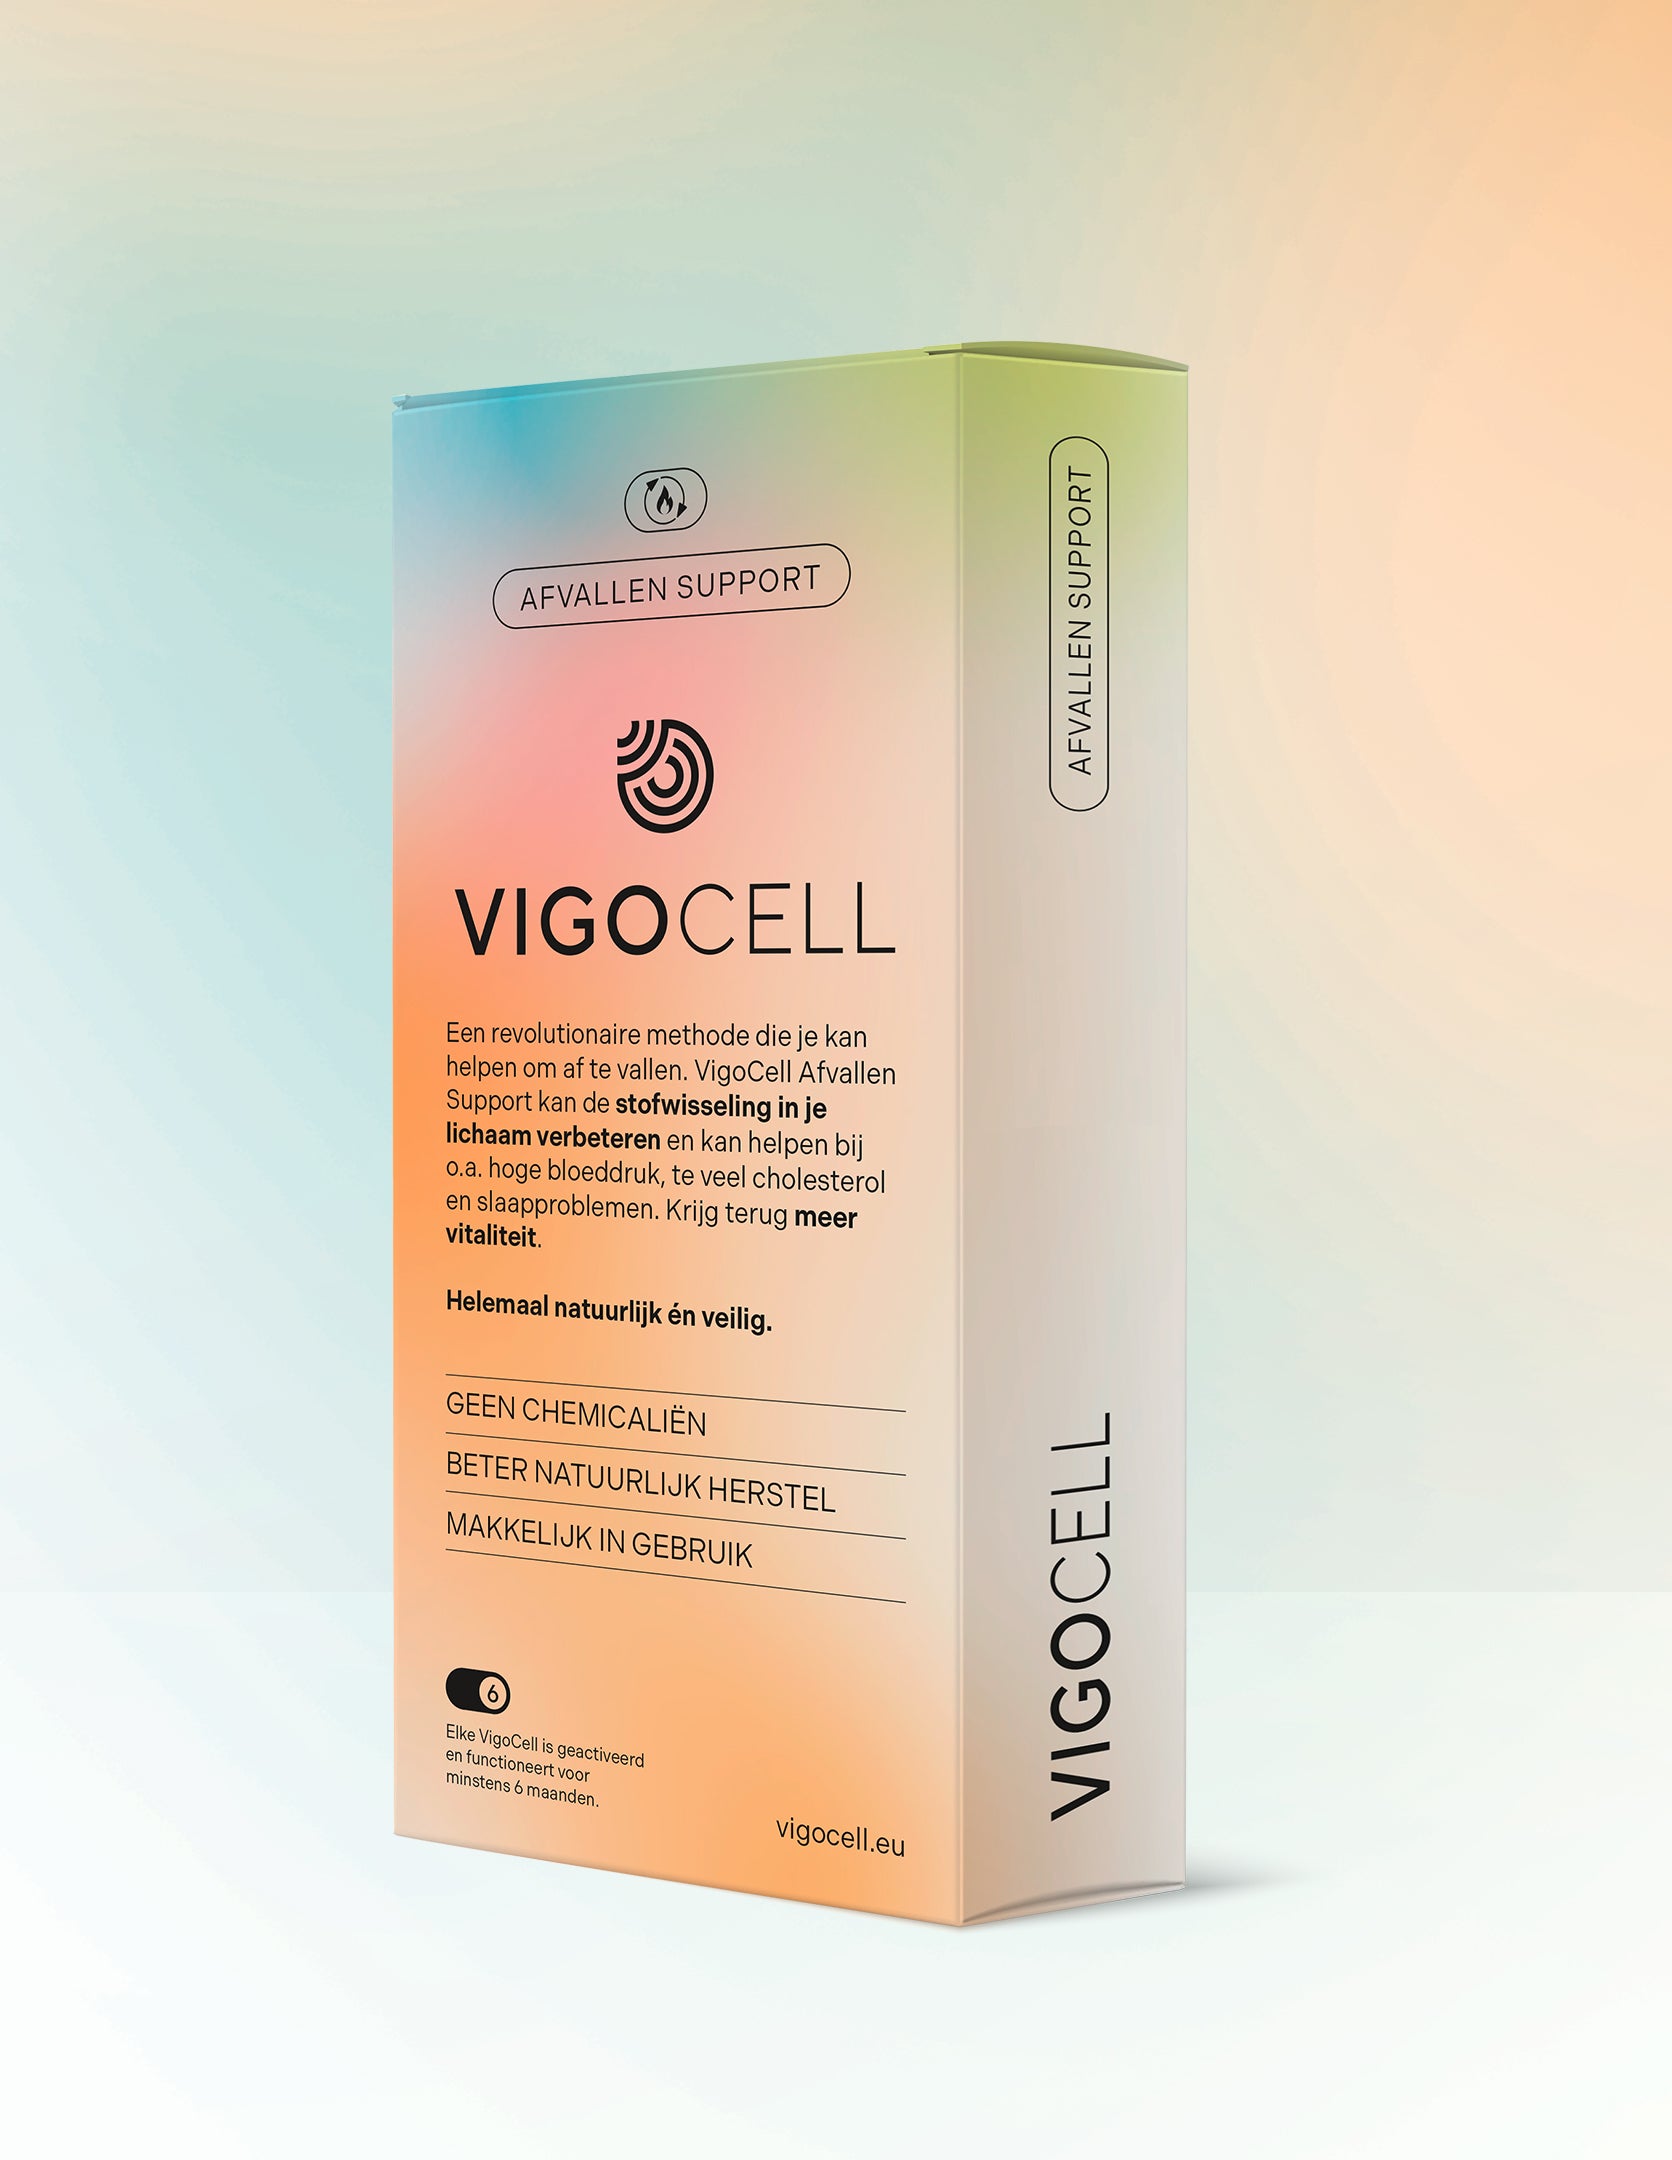 VigoCell Afvallen Support verpakking